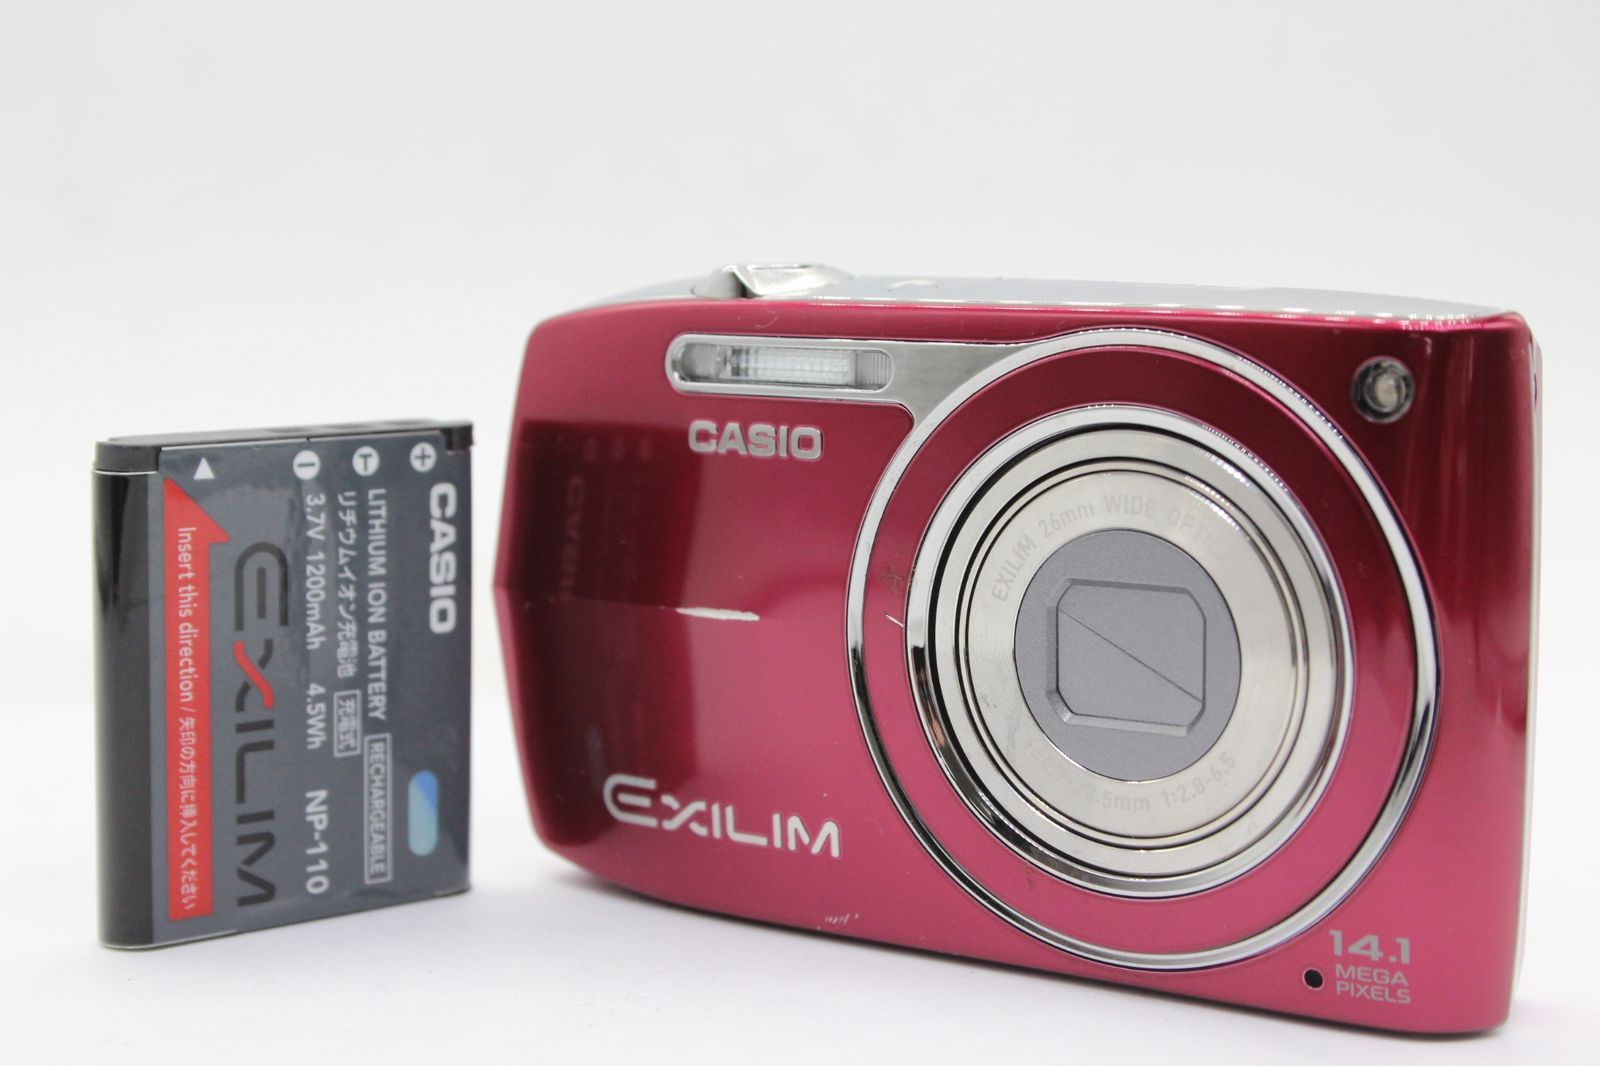 CASIO 【返品保証】 カシオ Casio Exilim EX-Z2000 ピンク 5x バッテリー付き コンパクトデジタルカメラ v726